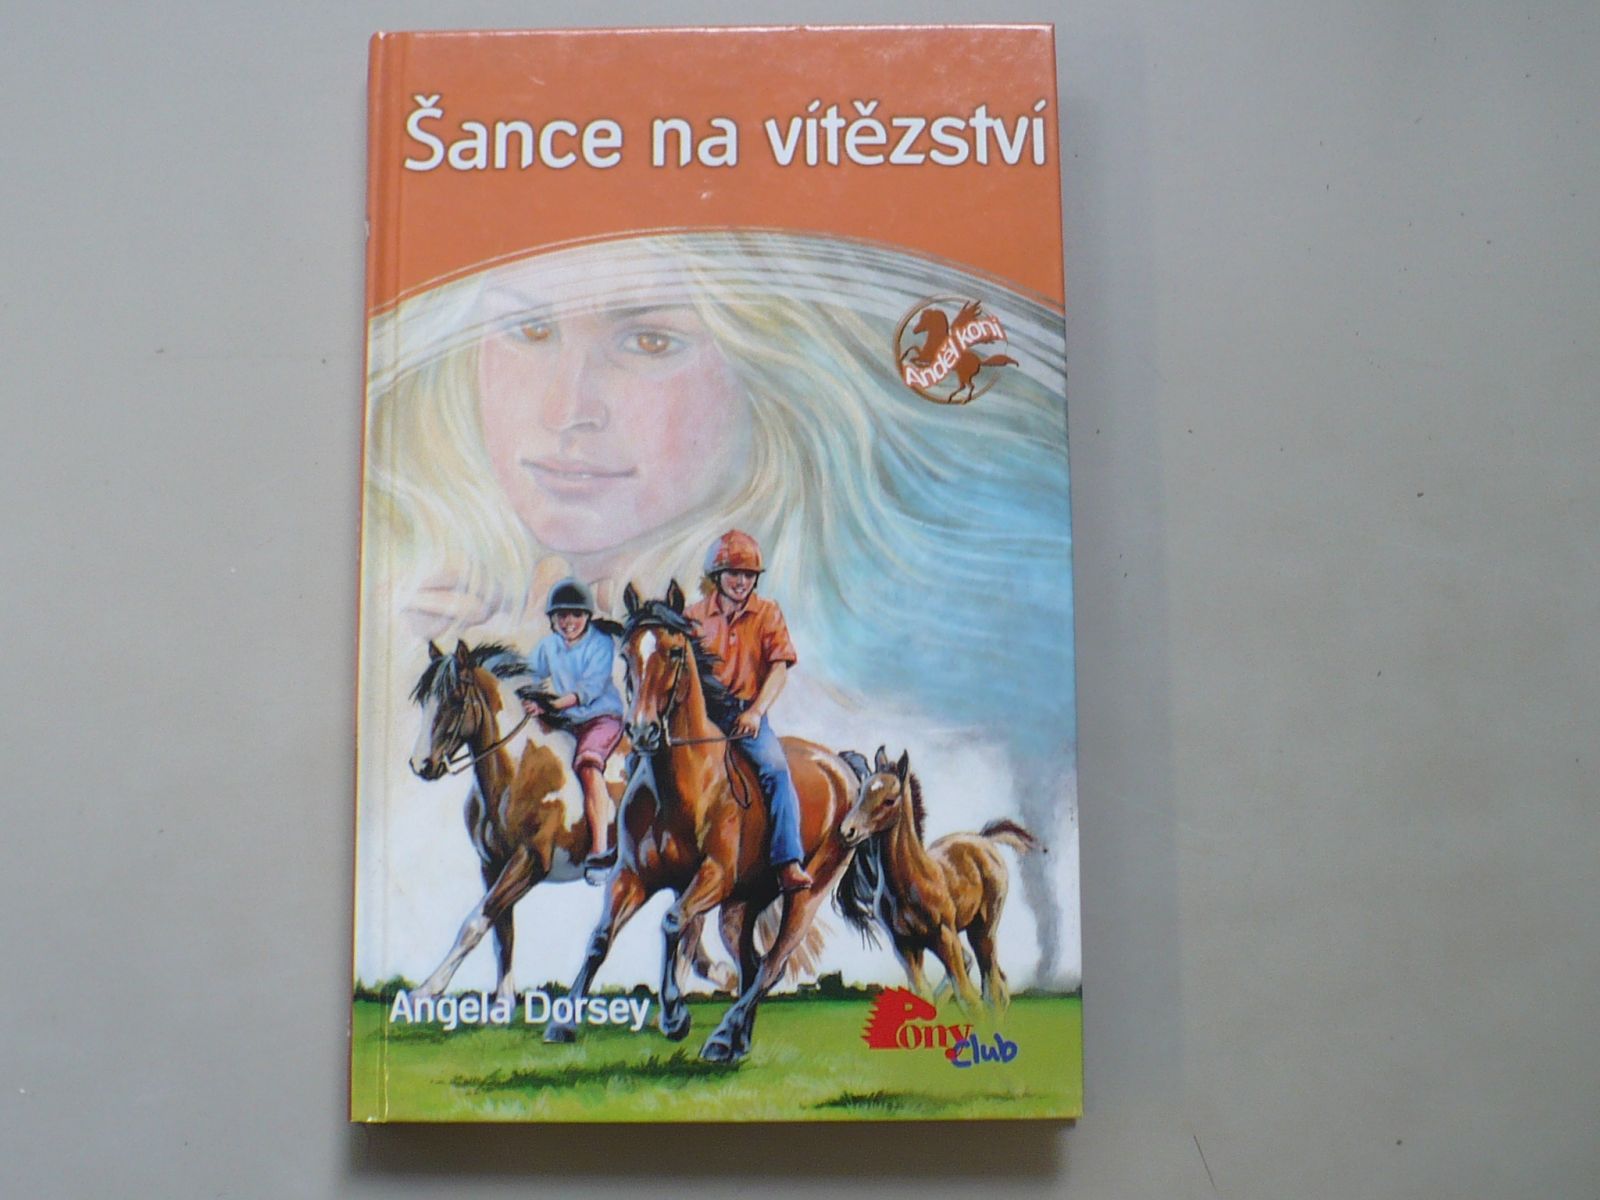 Dorsey - Anděl koní 7 - Šance na vítězství (2008)